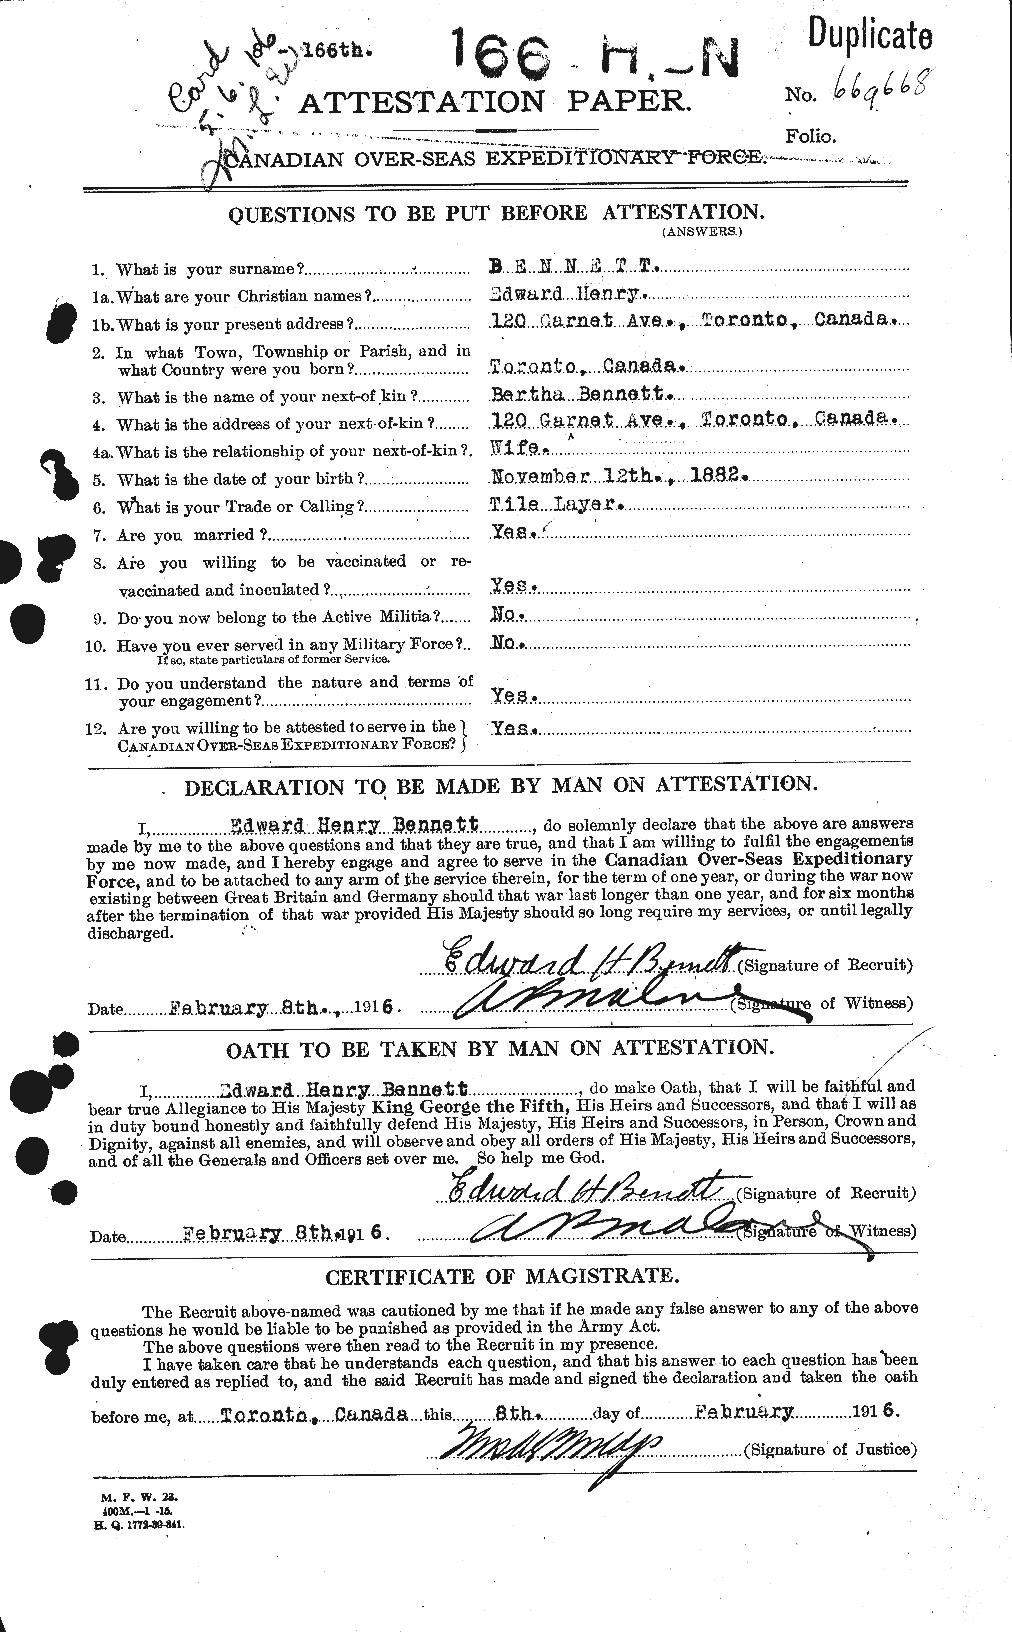 Dossiers du Personnel de la Première Guerre mondiale - CEC 233463a